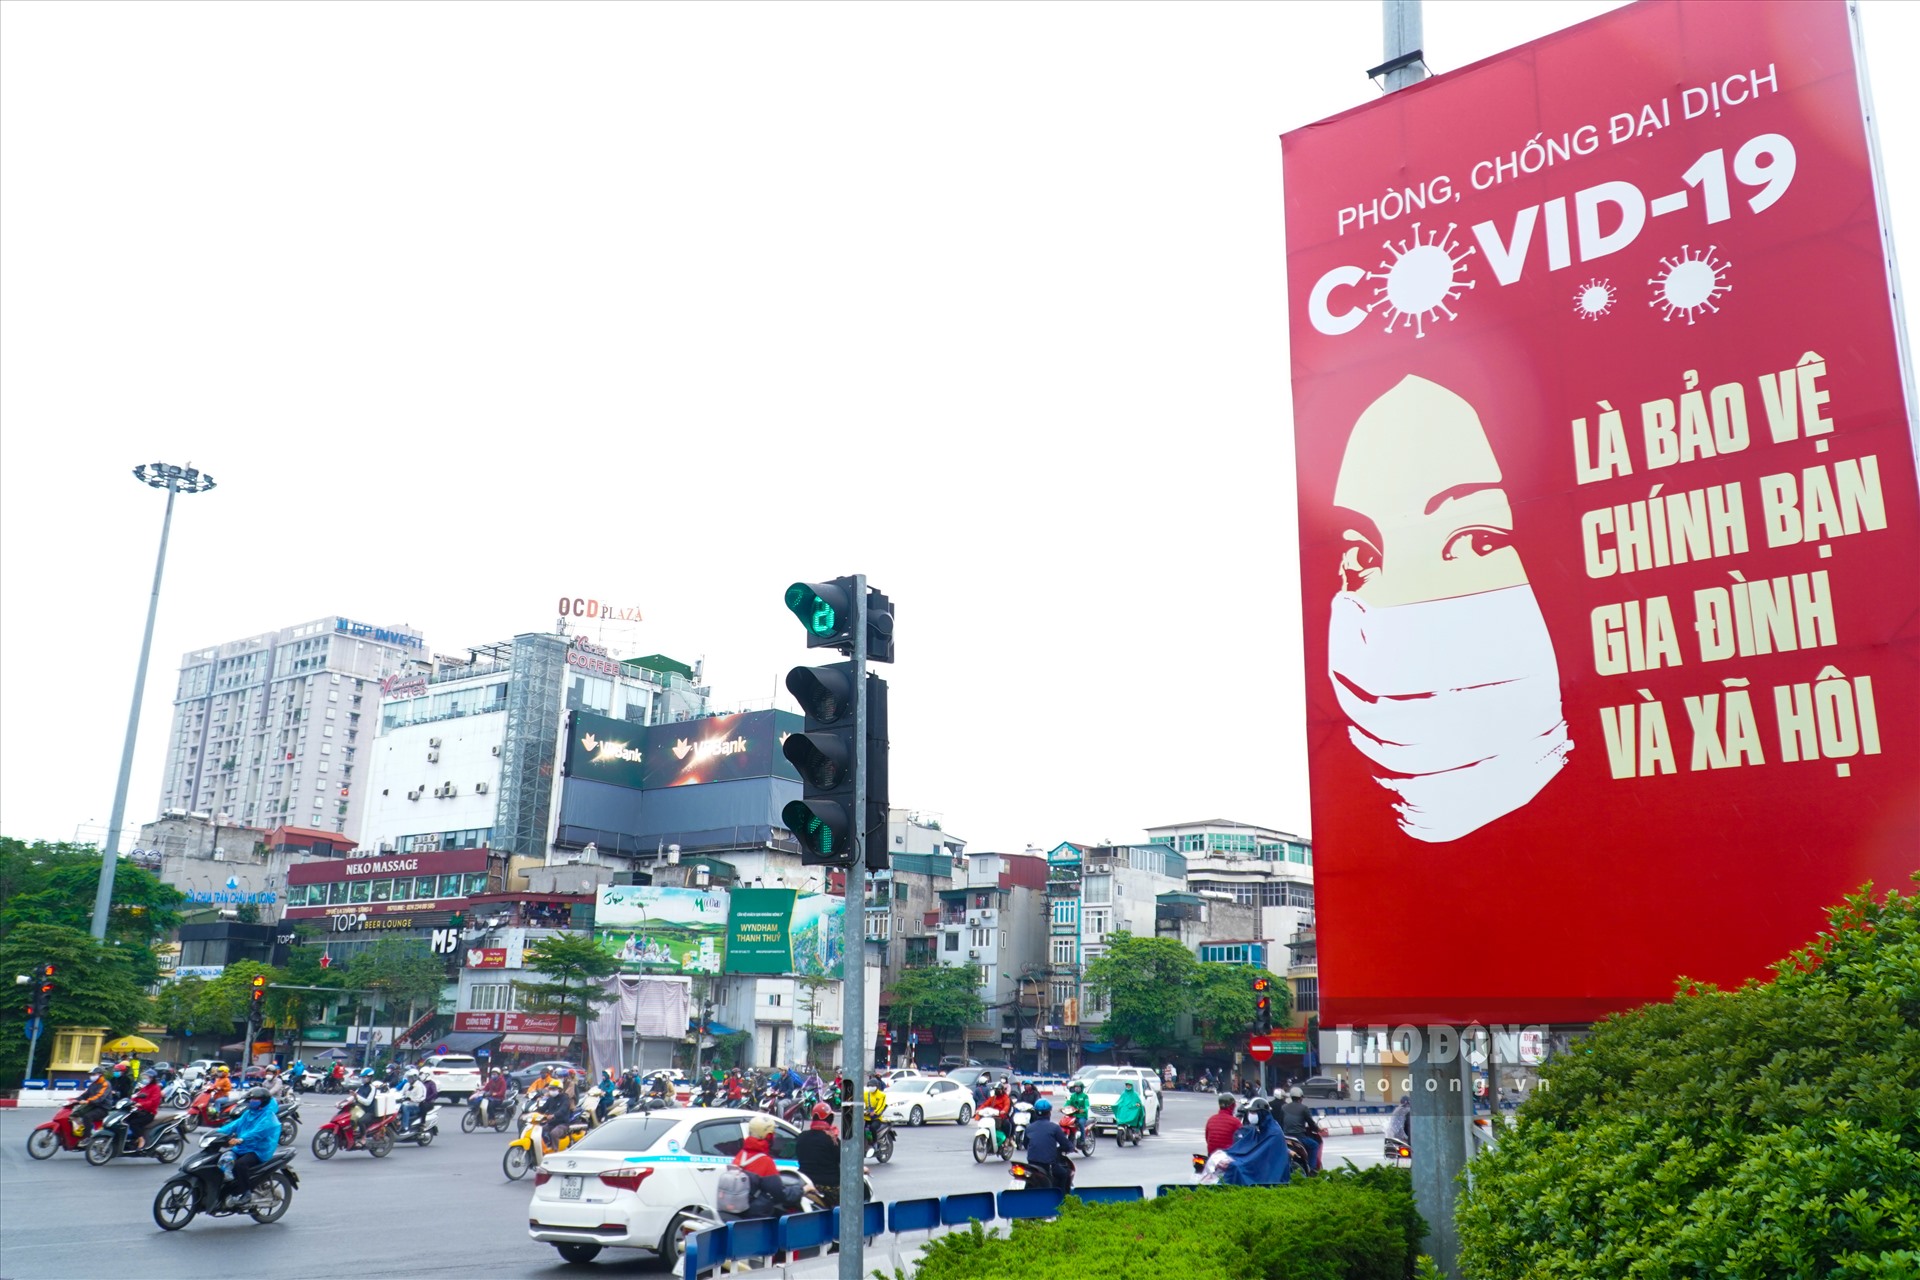 Những ngày qua, trên khắp phố phường Hà Nội, không khó để bắt gặp những bức tranh cổ động đa kích cỡ, sắc màu, đi kèm thông điệp cổ động phòng, chống dịch Covid-19 đầy mạnh mẽ.